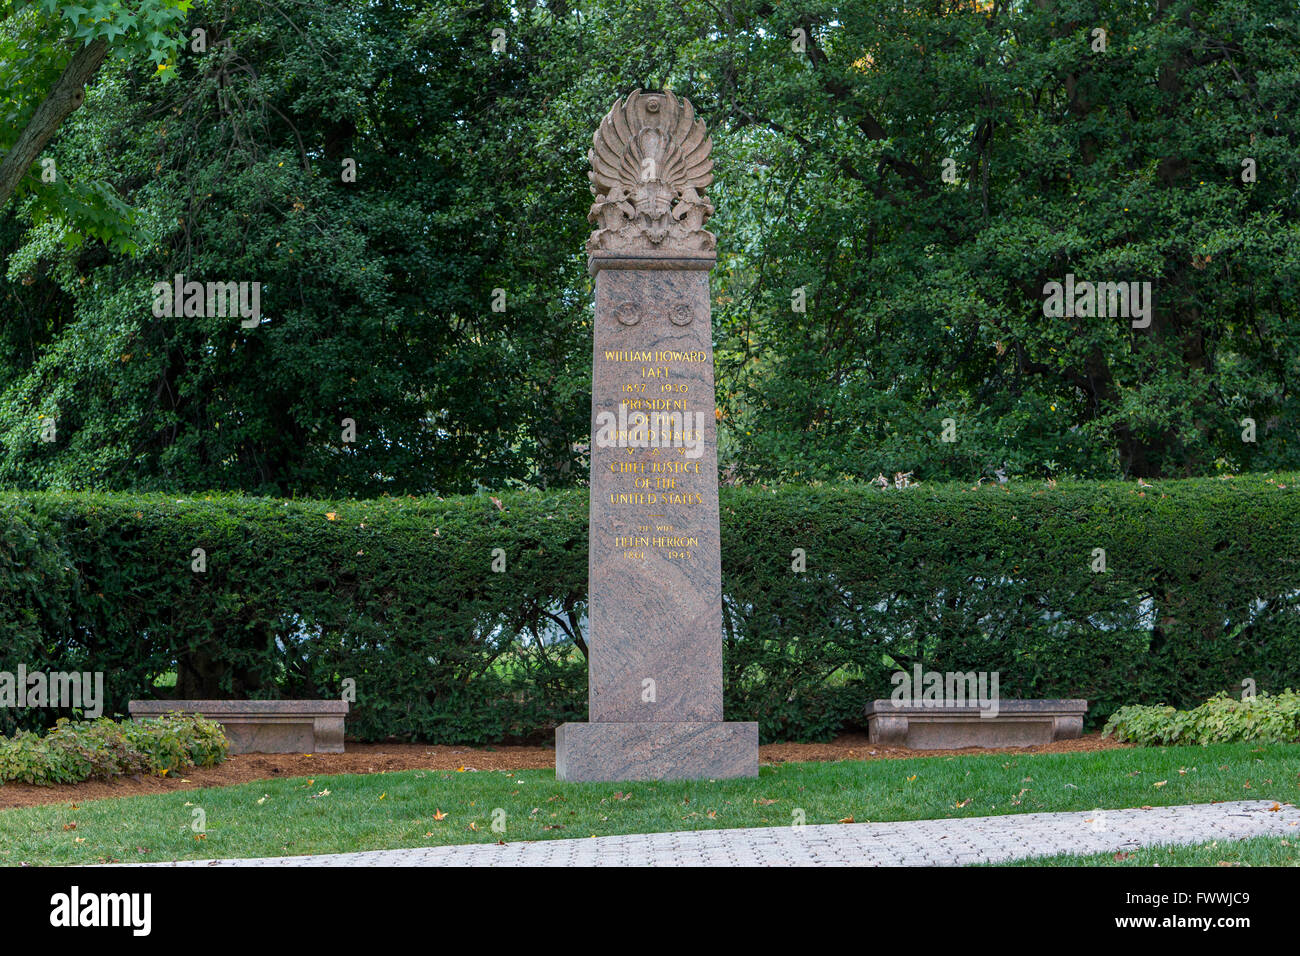 Le Cimetière National d'Arlington, en Virginie. Mémoire du président William Howard Taft. Banque D'Images